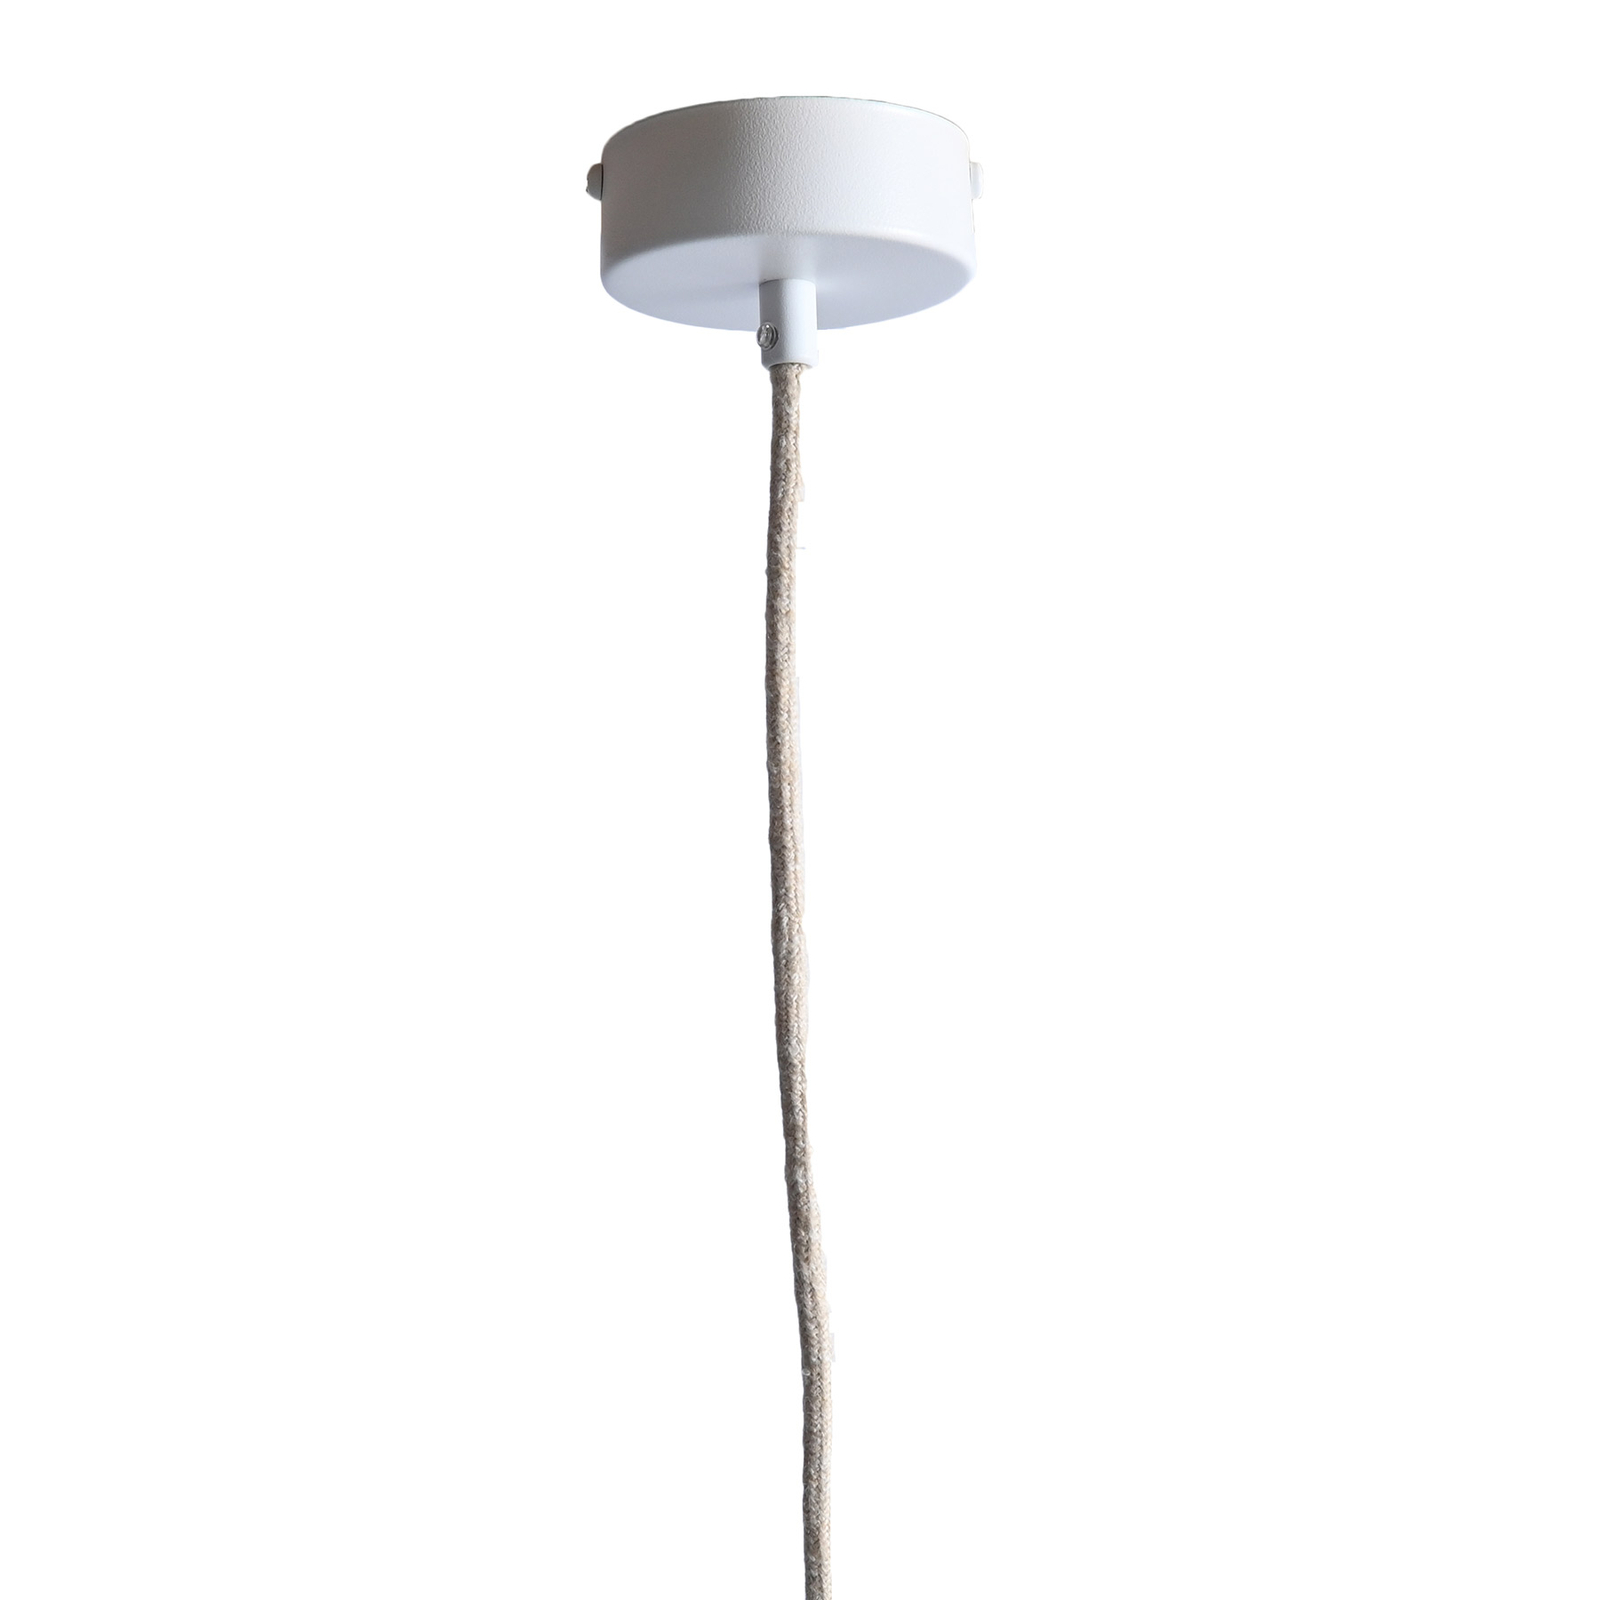 LeuchtNatur Nux hanglamp, populier/wit